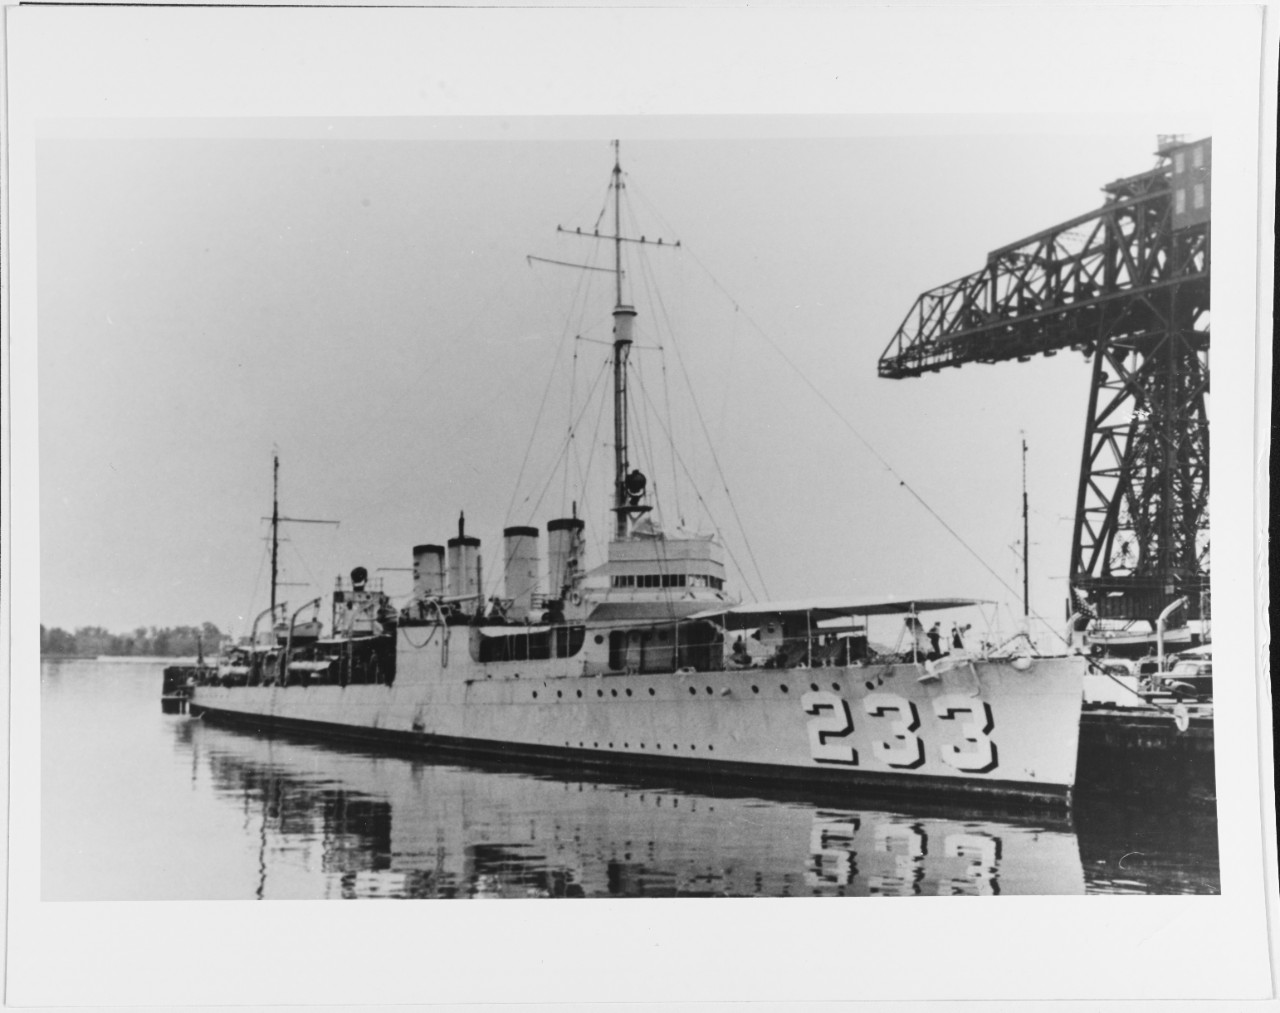 USS GILMER (DD-233)